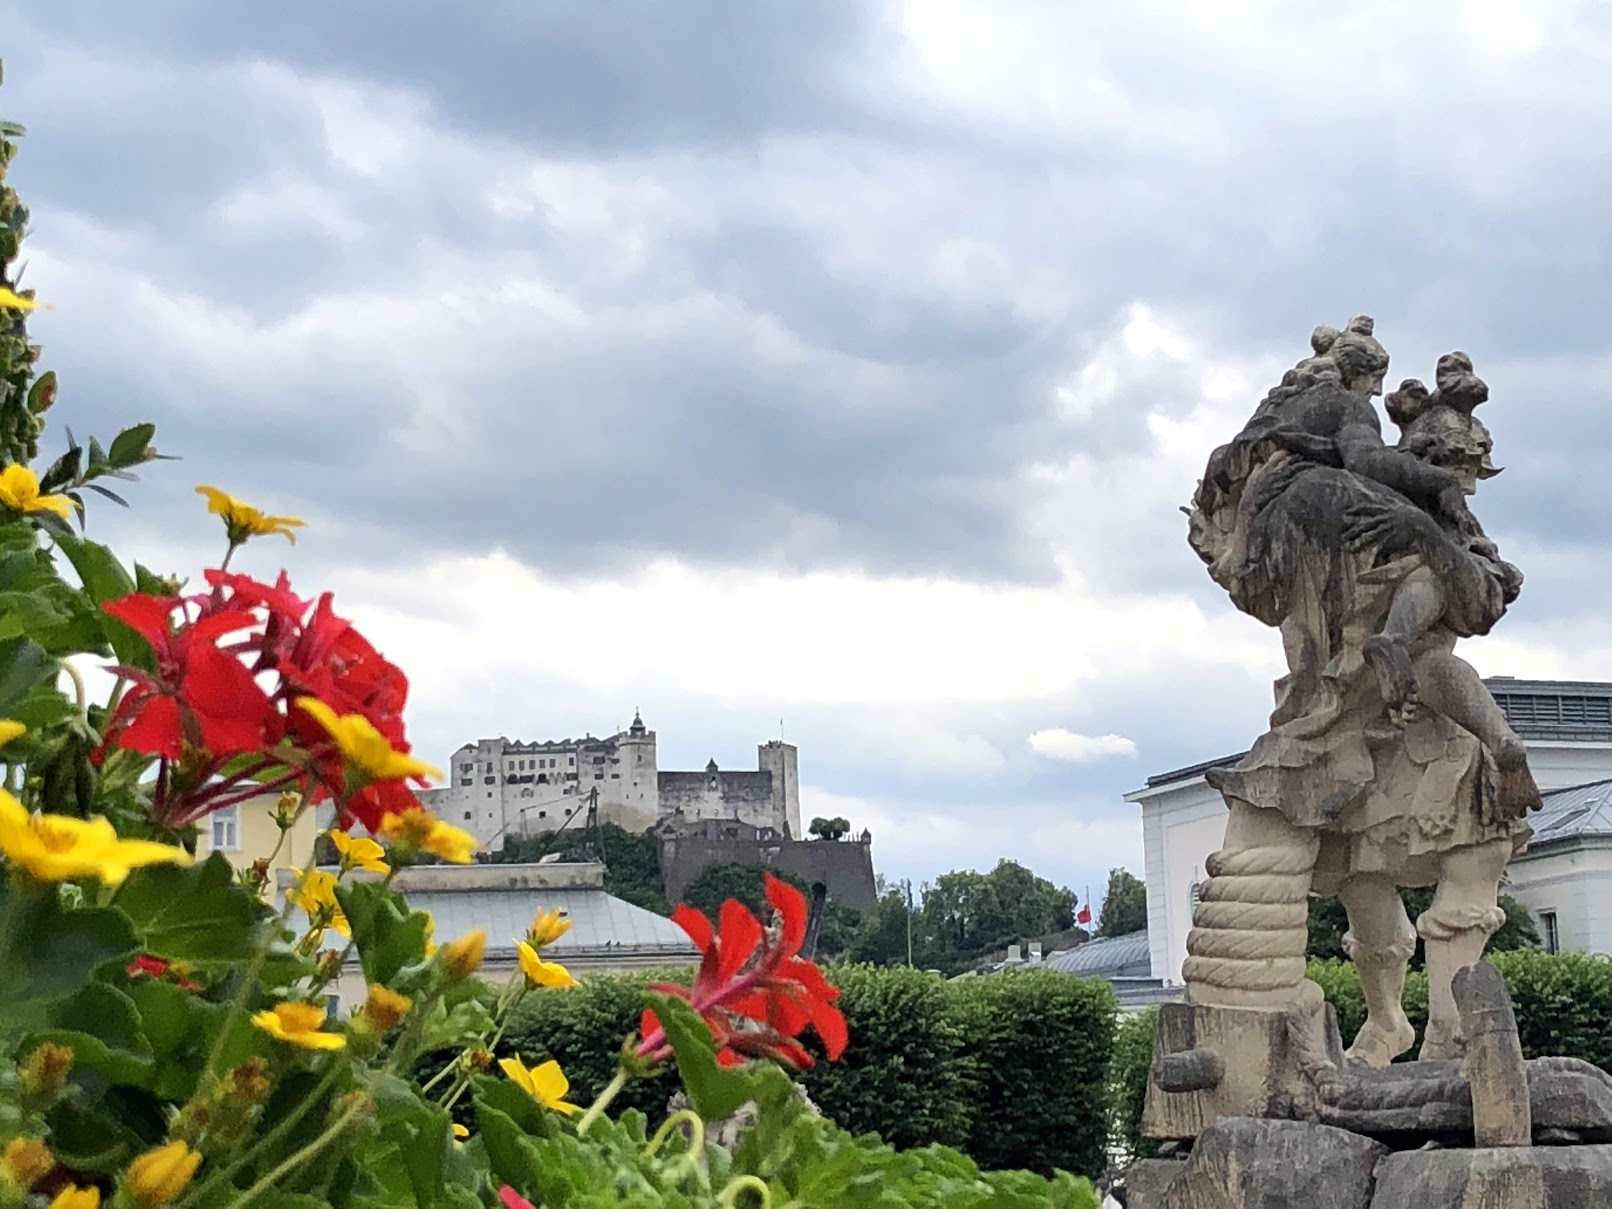 Flowers and statue in garden - Salzburg